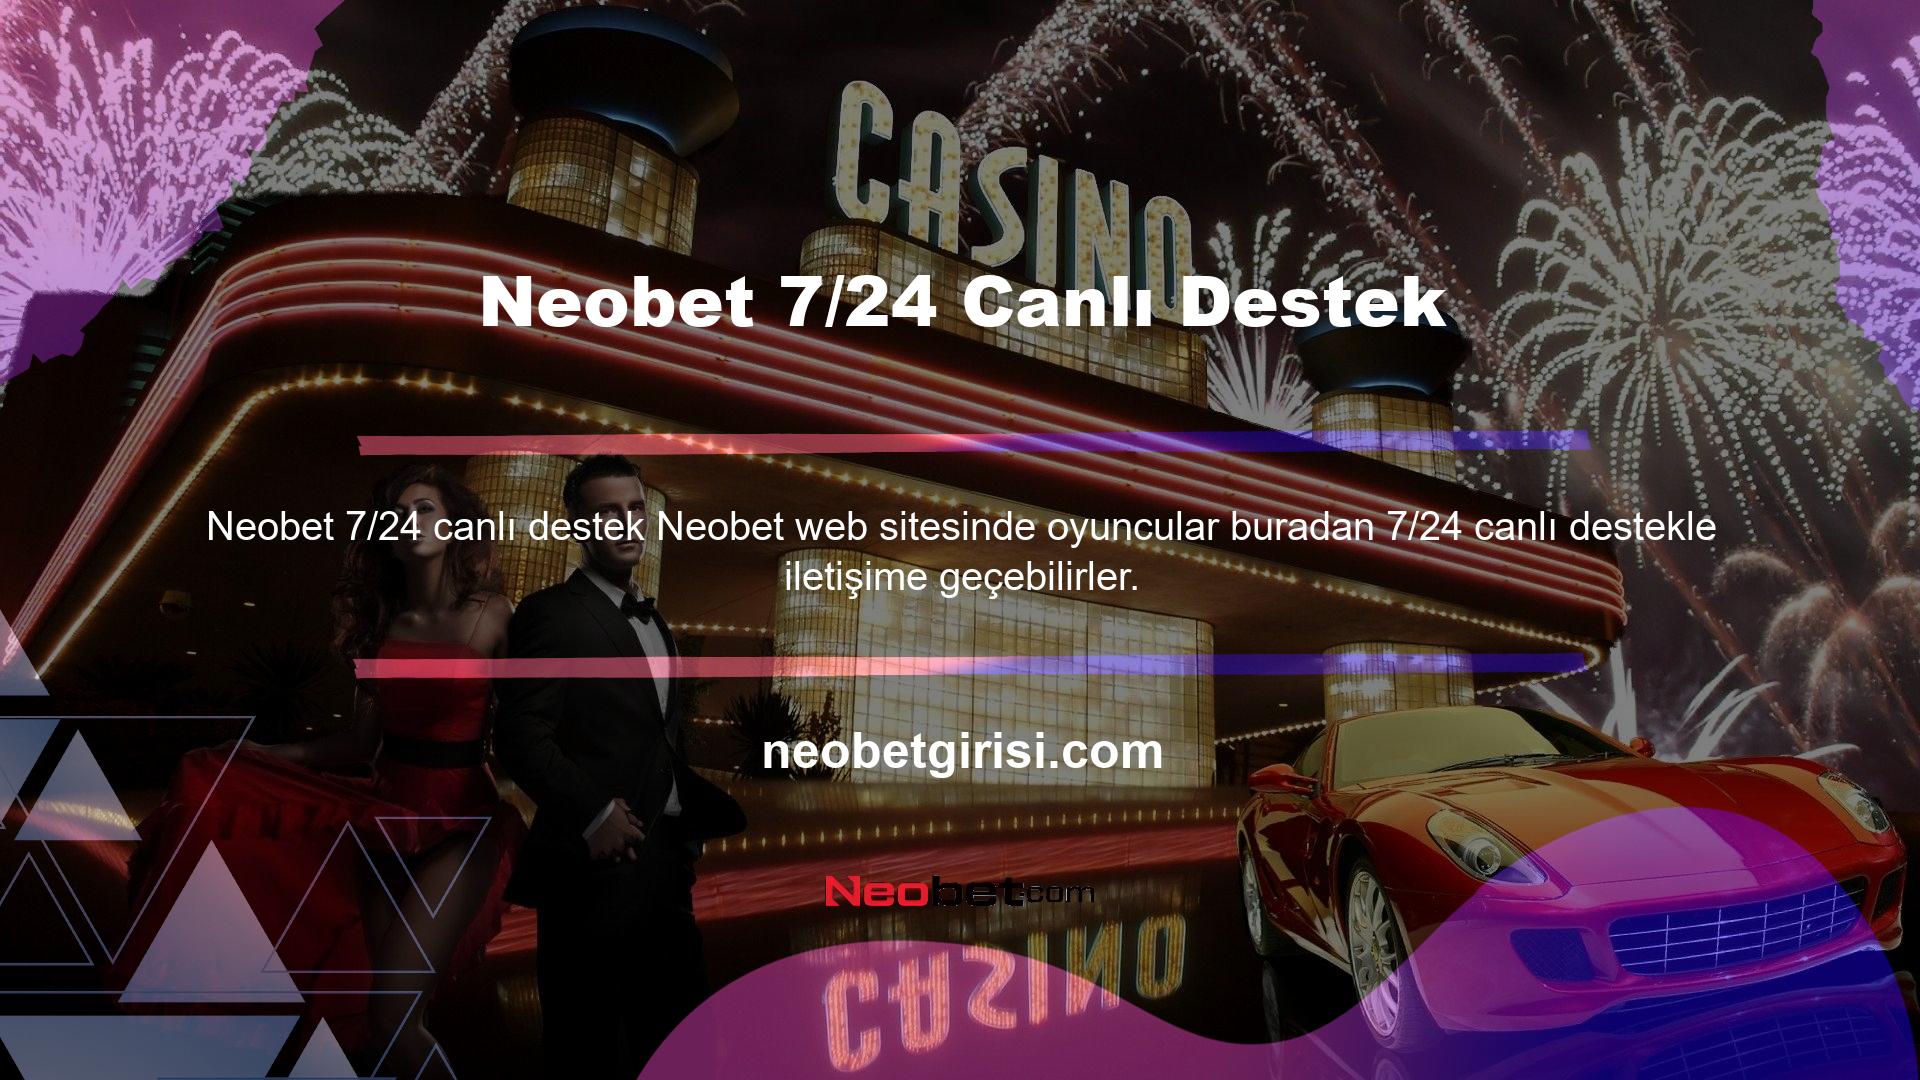 Neobet benzersiz 7/24 Canlı Desteğine erişim, web sitemizin ana sayfasındaki "Canlı Çevrimiçi Destek" bölümüne tıklayarak kolayca kurulmaktadır